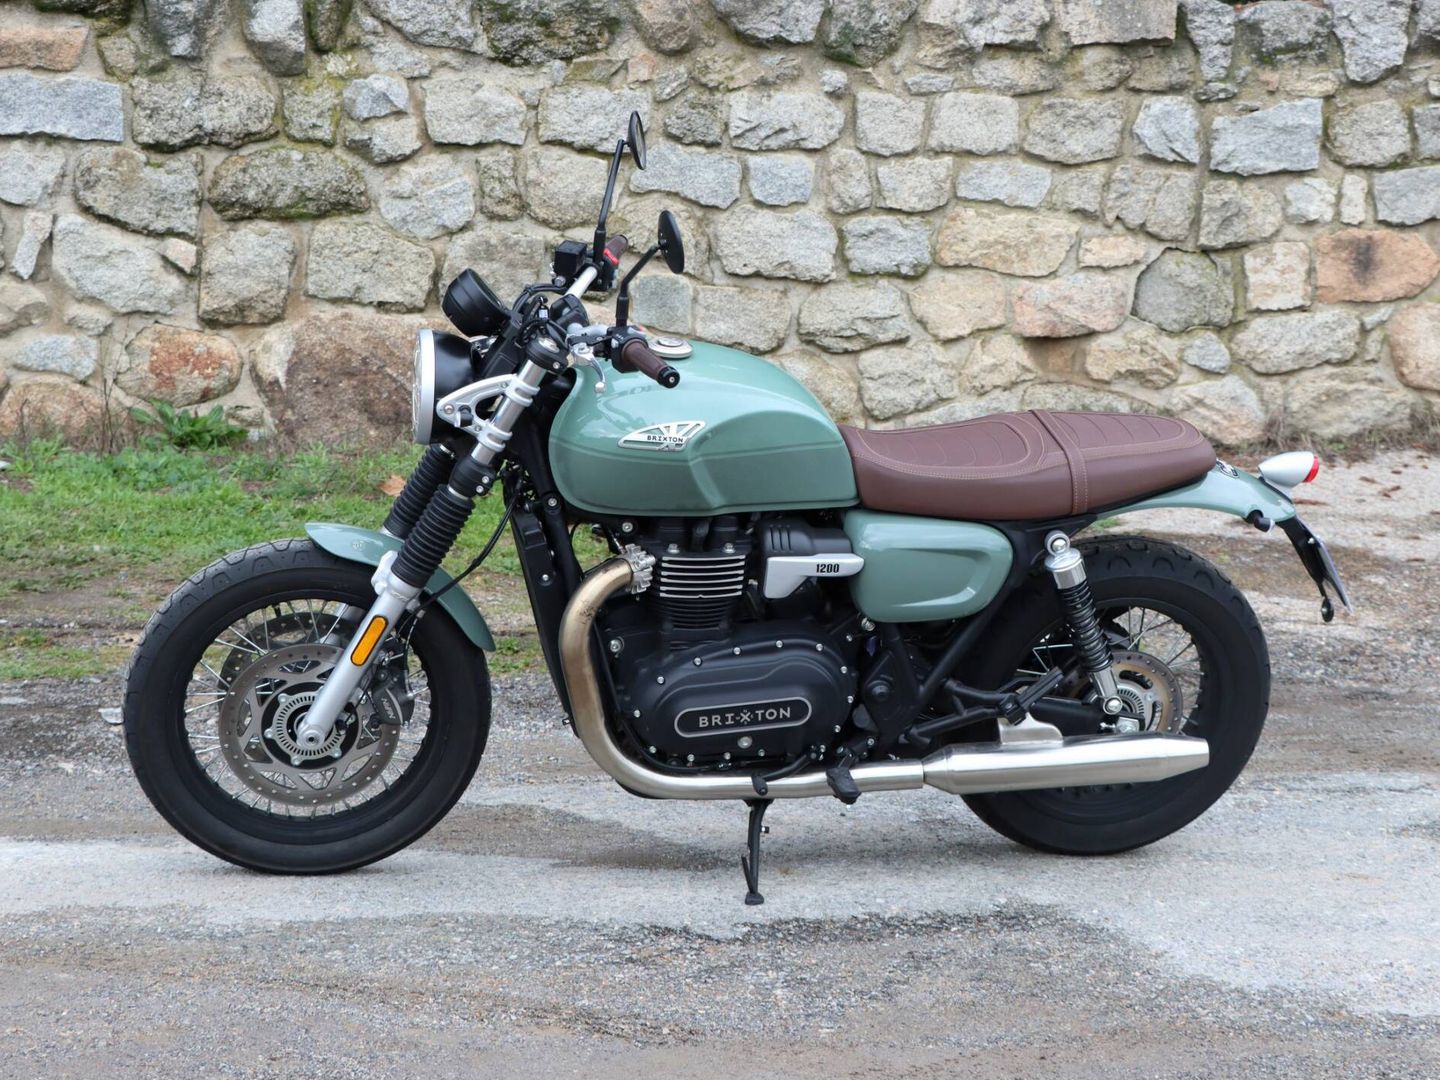 Estampa clásica, como una genuina moto británica, pero la Cromwell 1200 fue concebida en Austria y construida en Asia.

